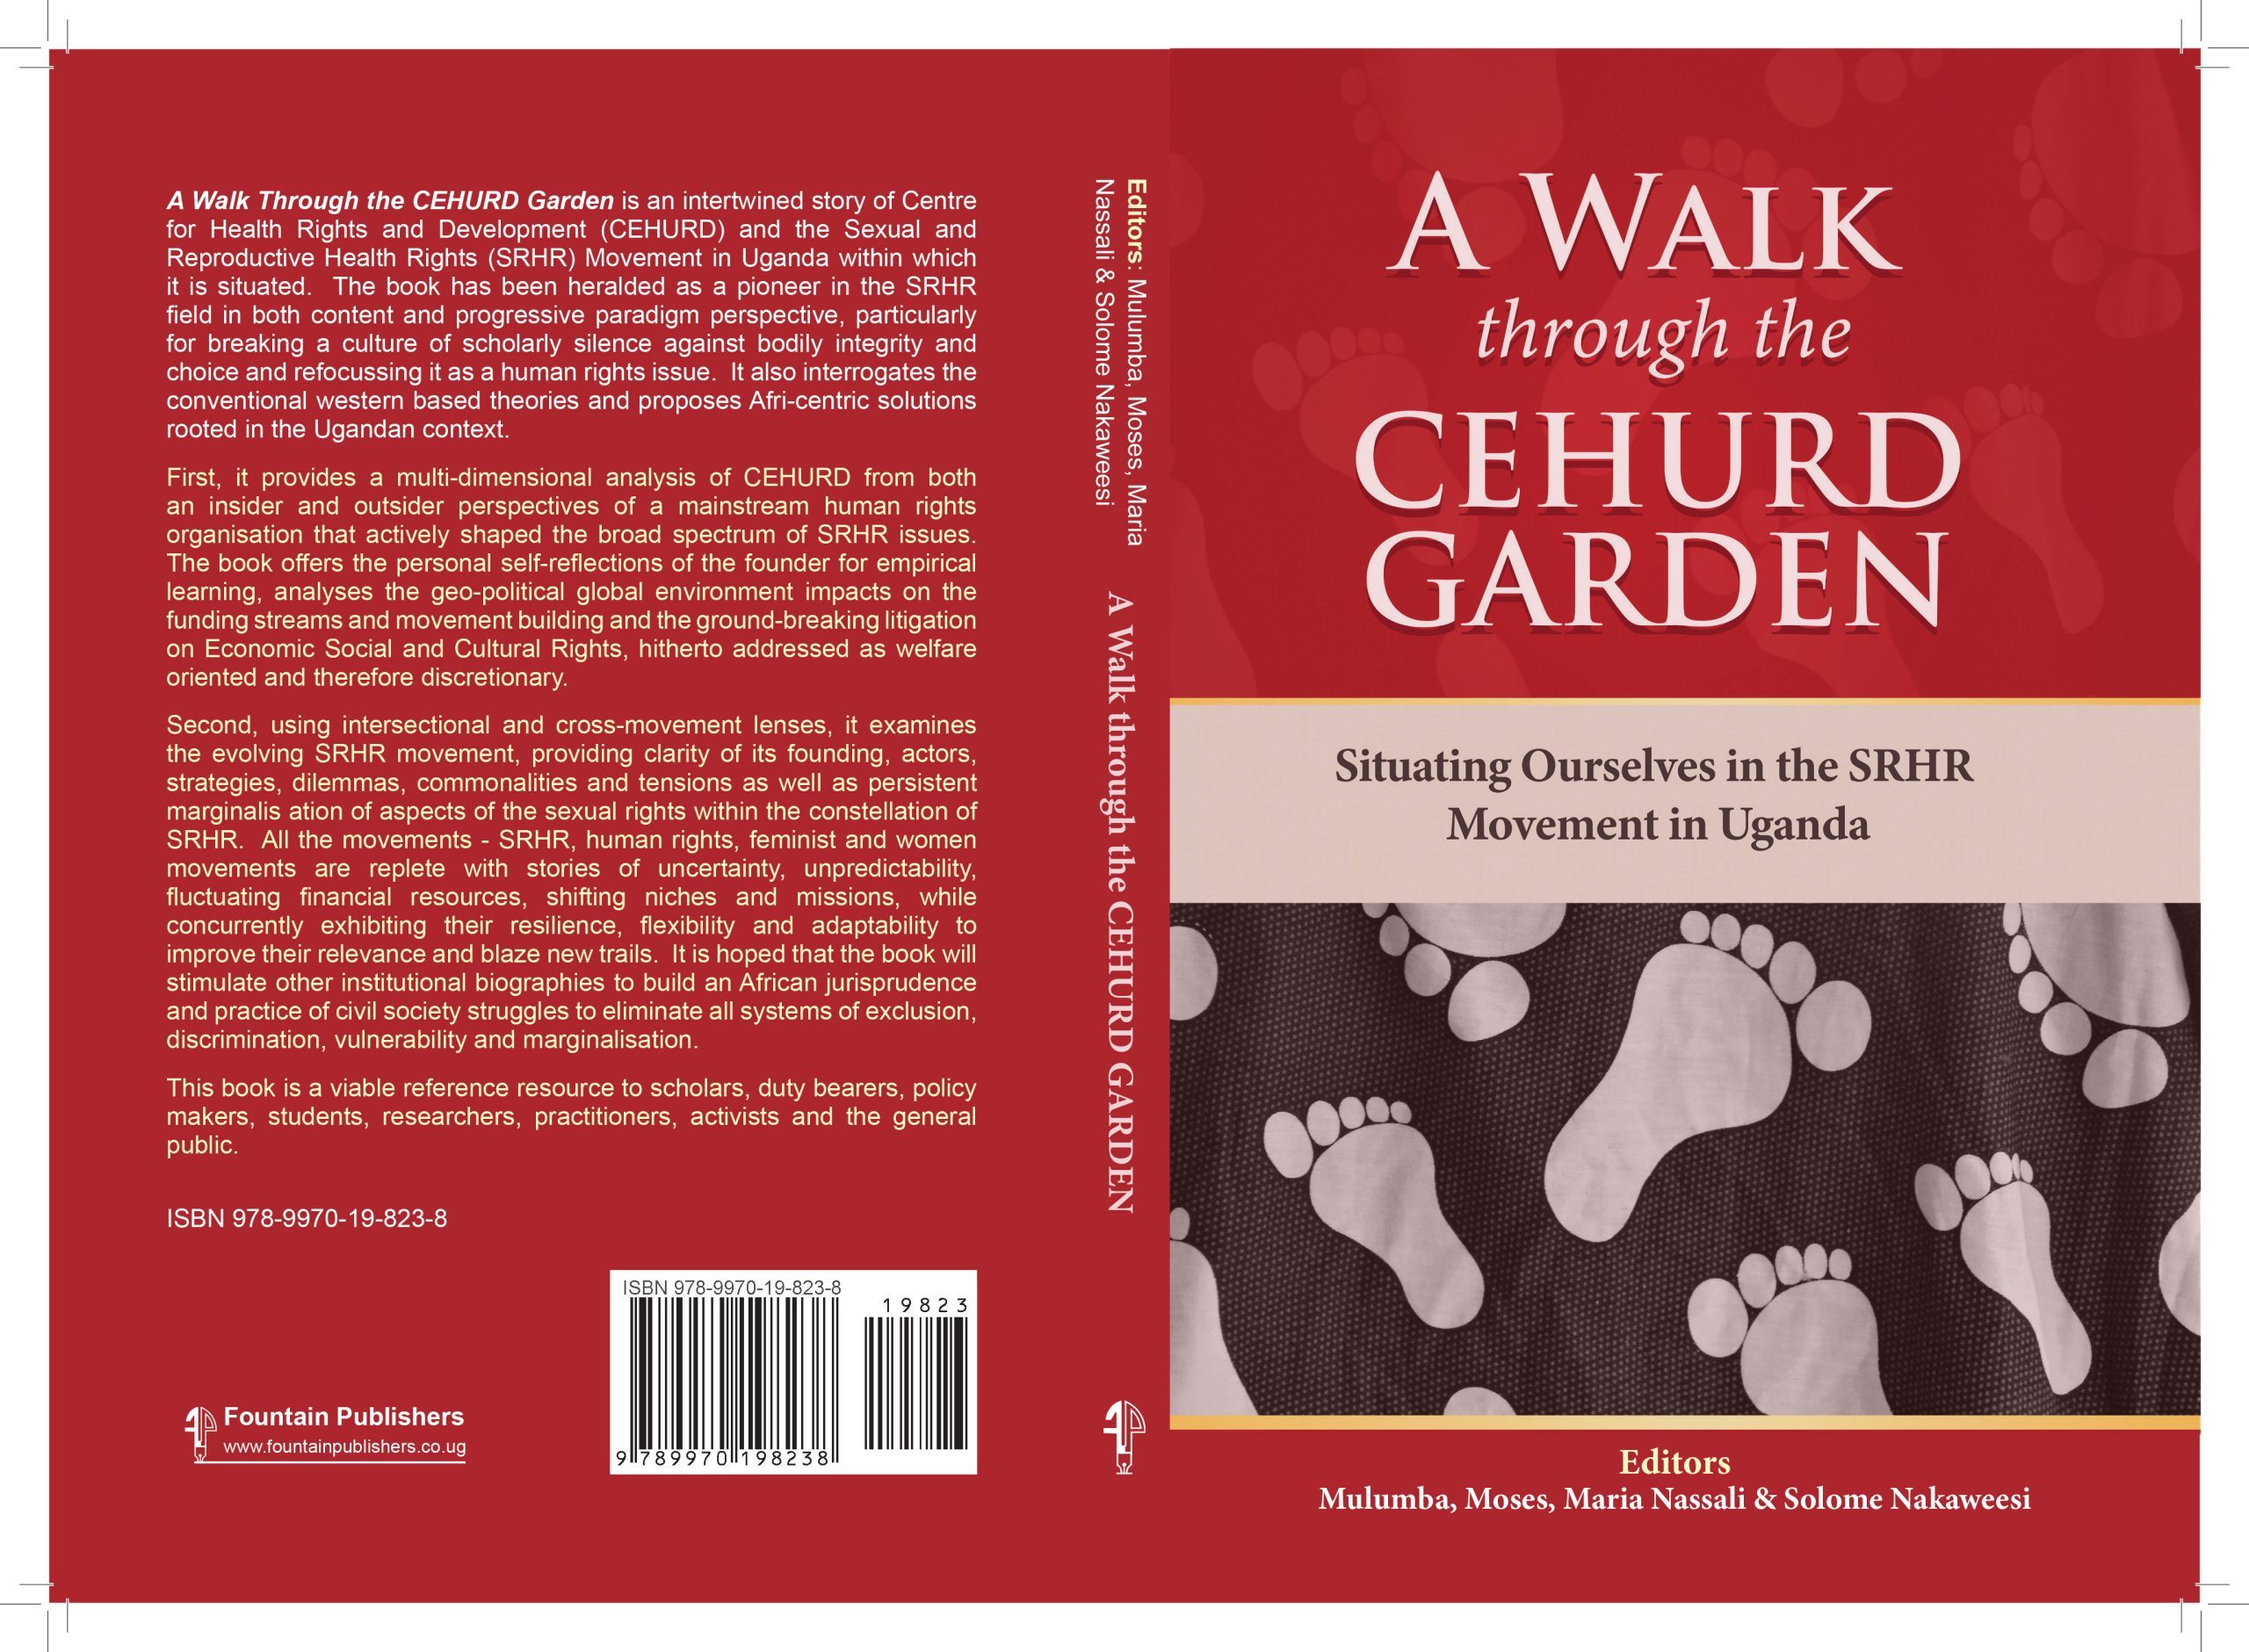 A walk through CEHURD Garden Bookcover 2022